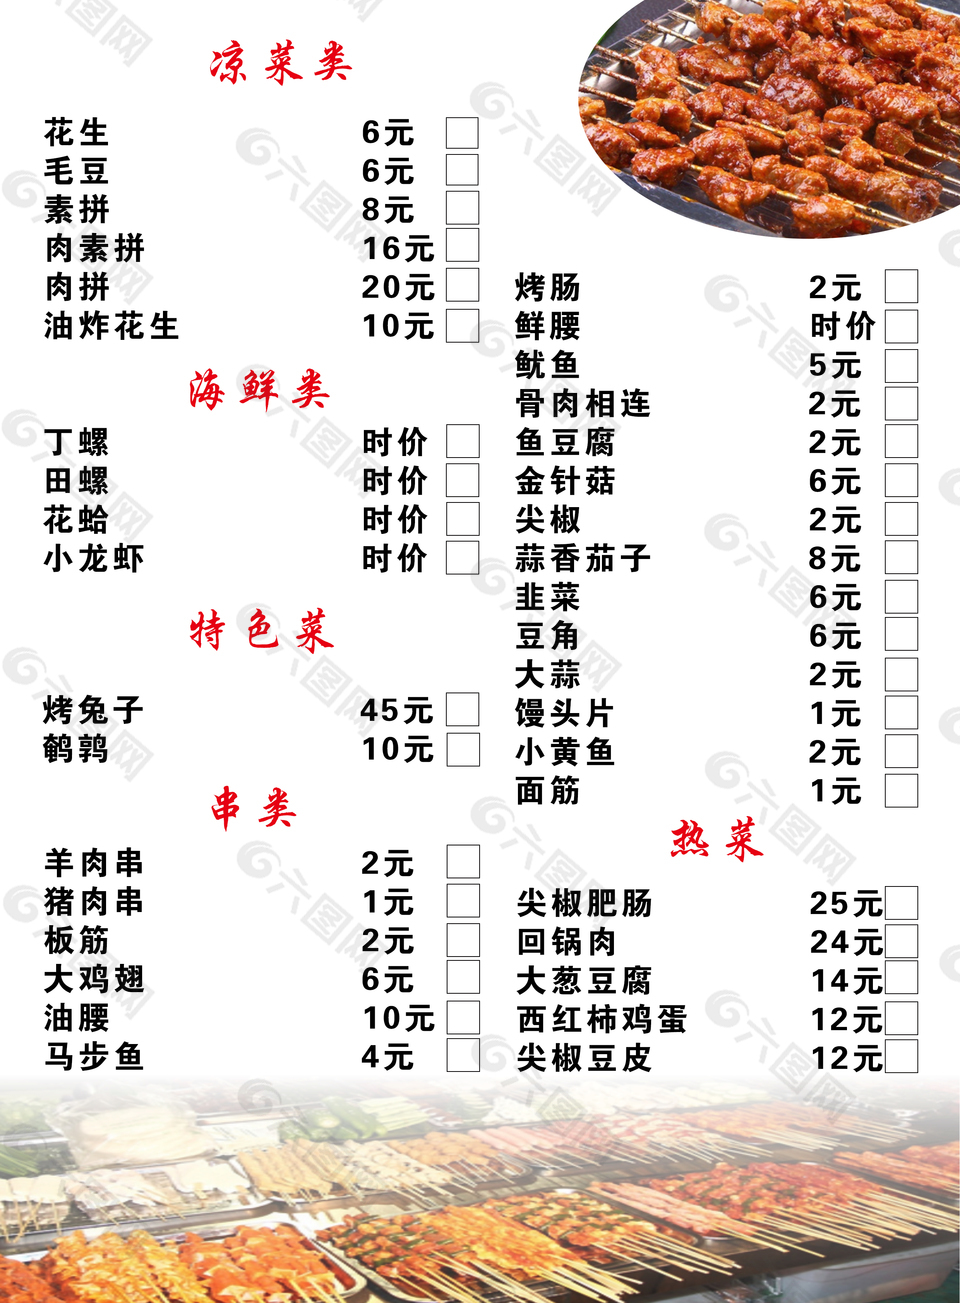 济南老金烧烤菜单图片